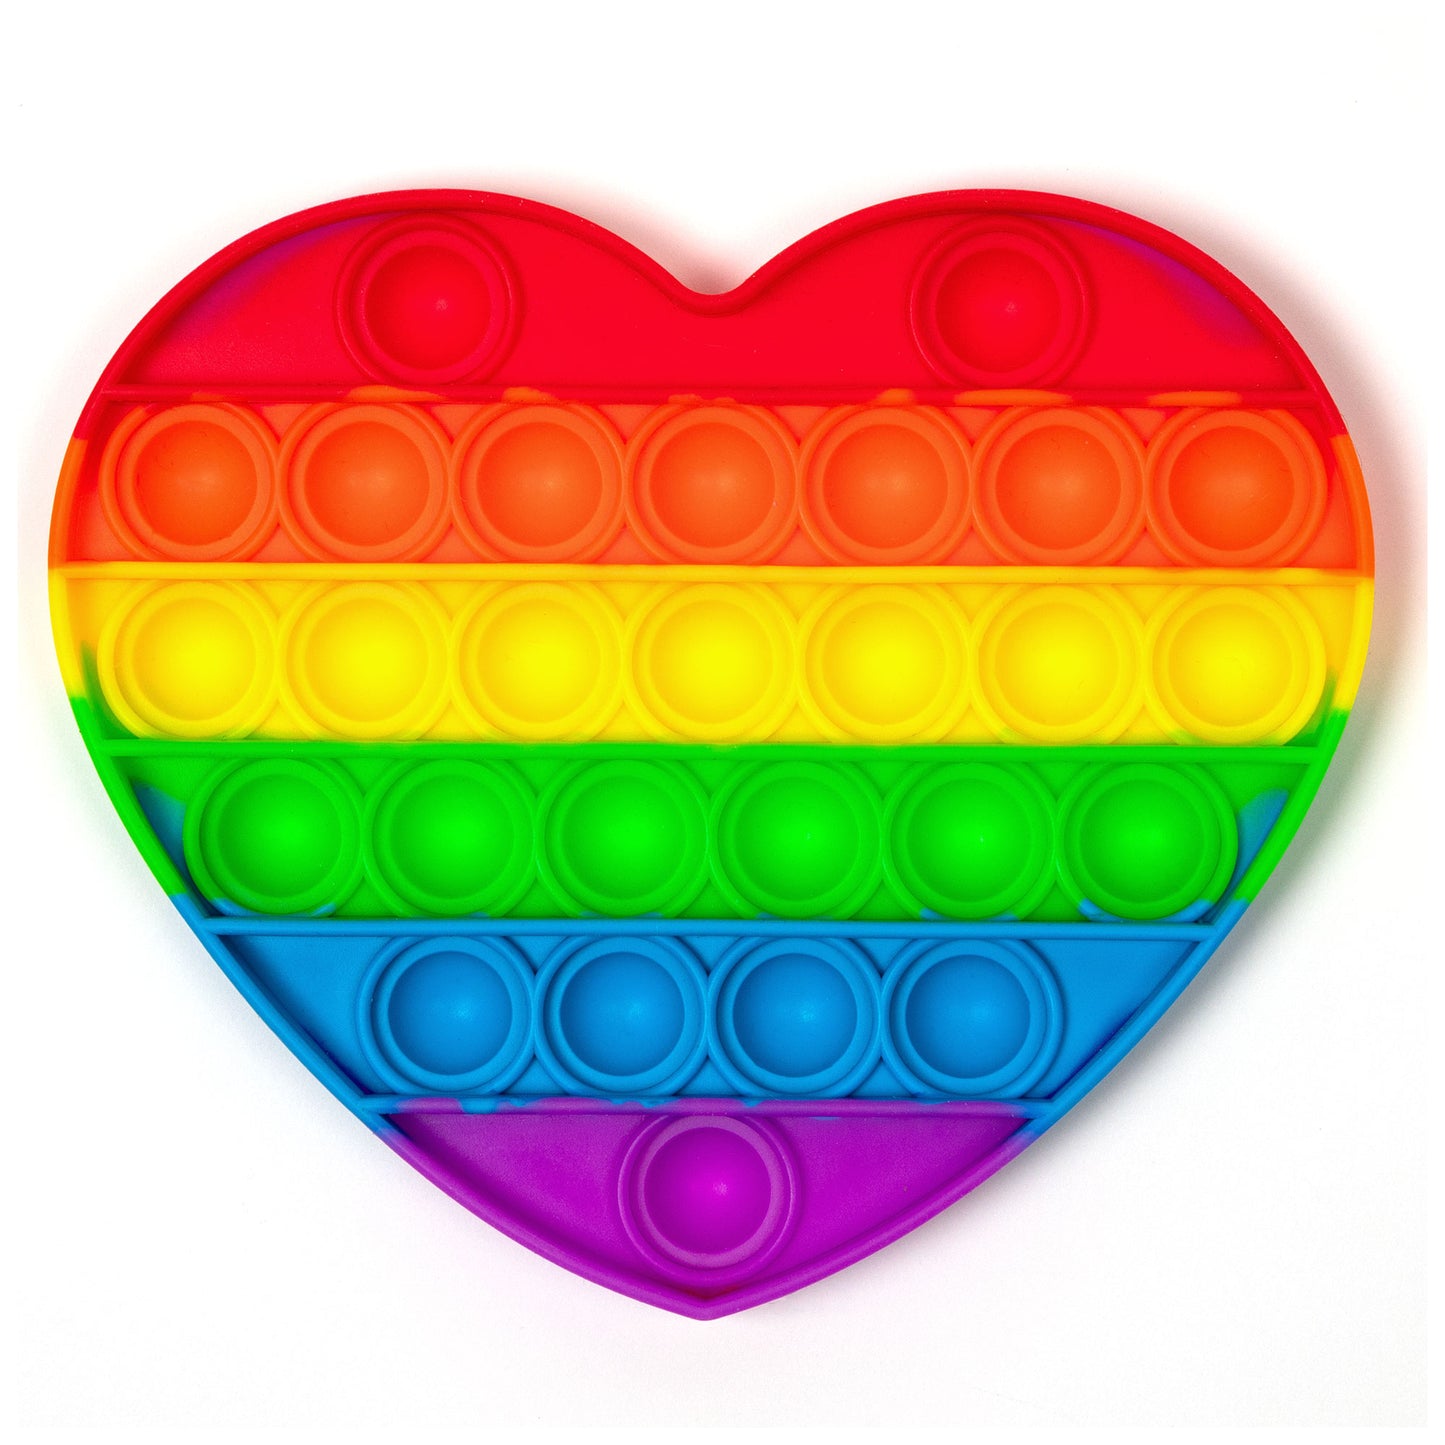 Primary Rainbow Fidget Pop-It Toy